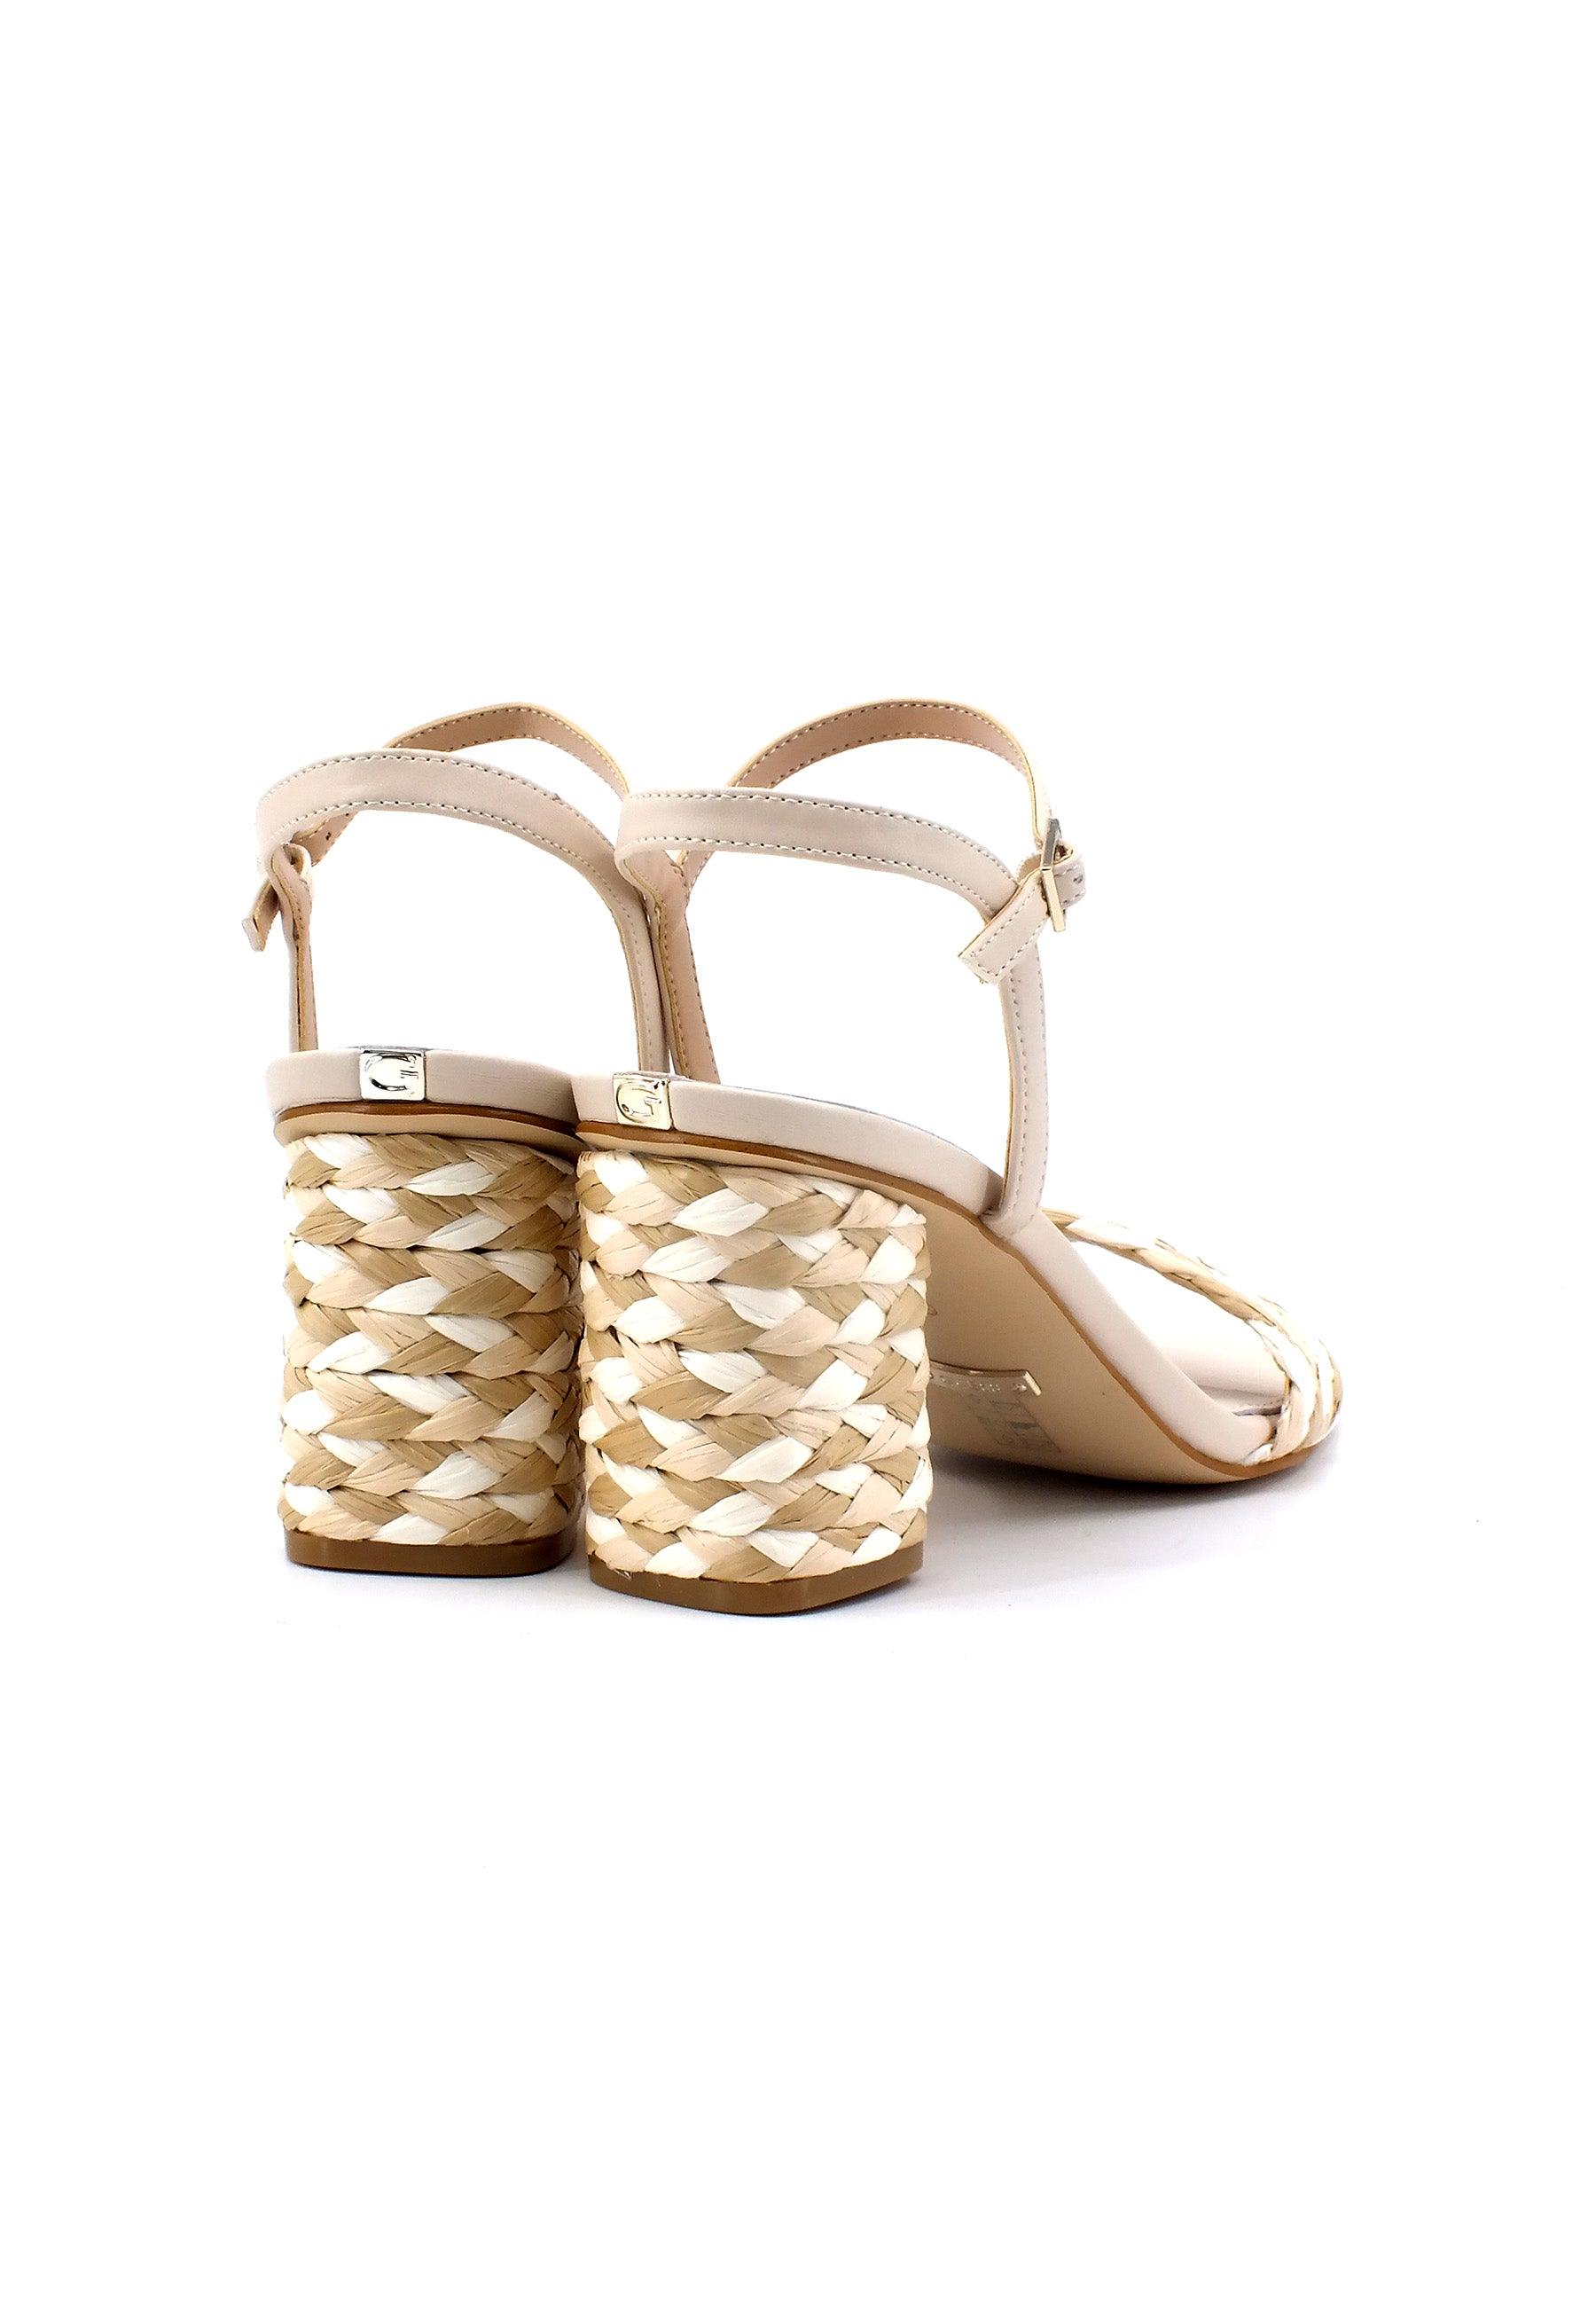 GUESS Sandalo Donna Tan Beige FL6CADELE03 - Sandrini Calzature e Abbigliamento